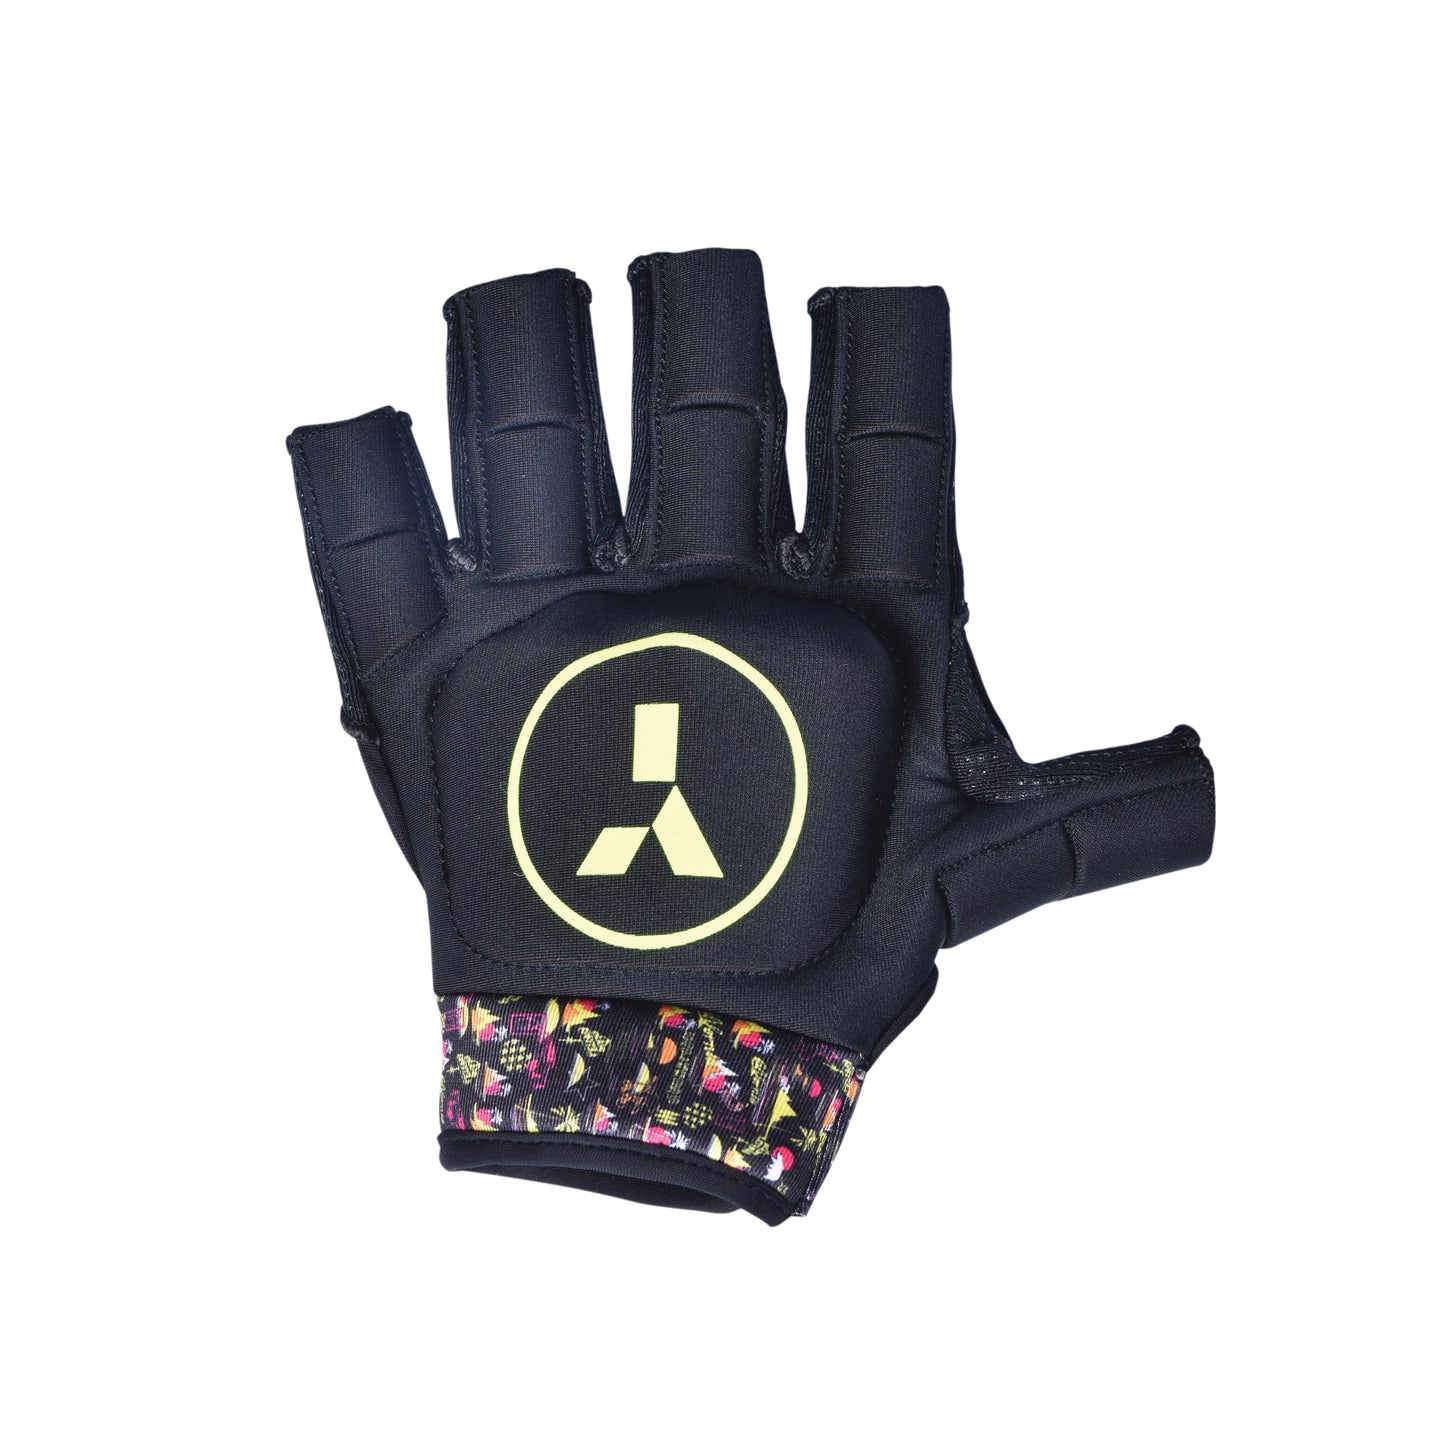 MK4 Glove